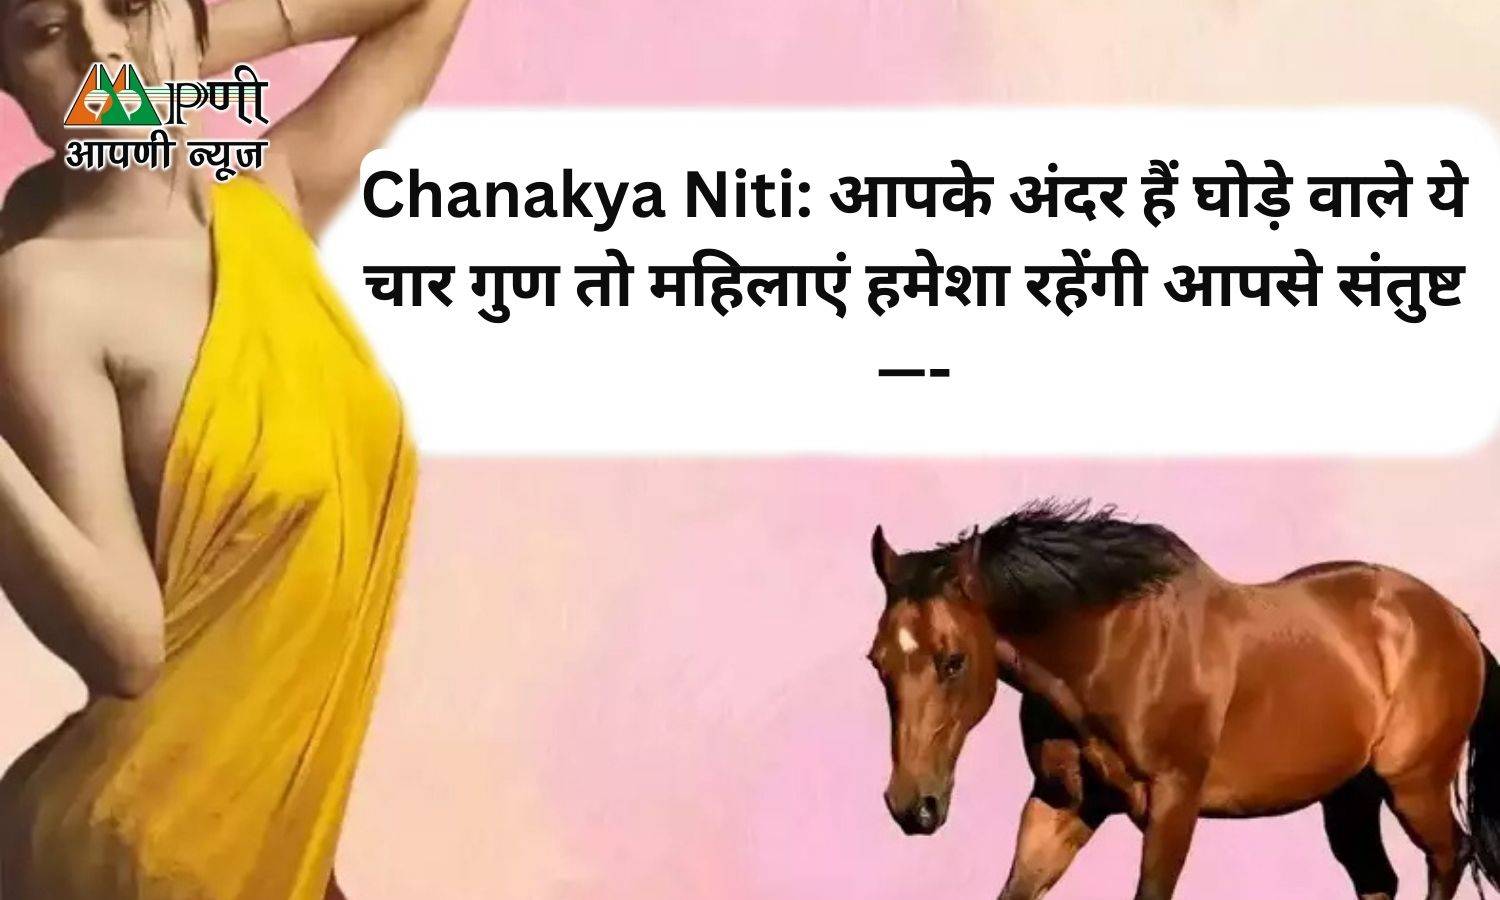 Chanakya Niti: आपके अंदर हैं घोड़े वाले ये चार गुण तो महिलाएं हमेशा रहेंगी आपसे संतुष्ट—-